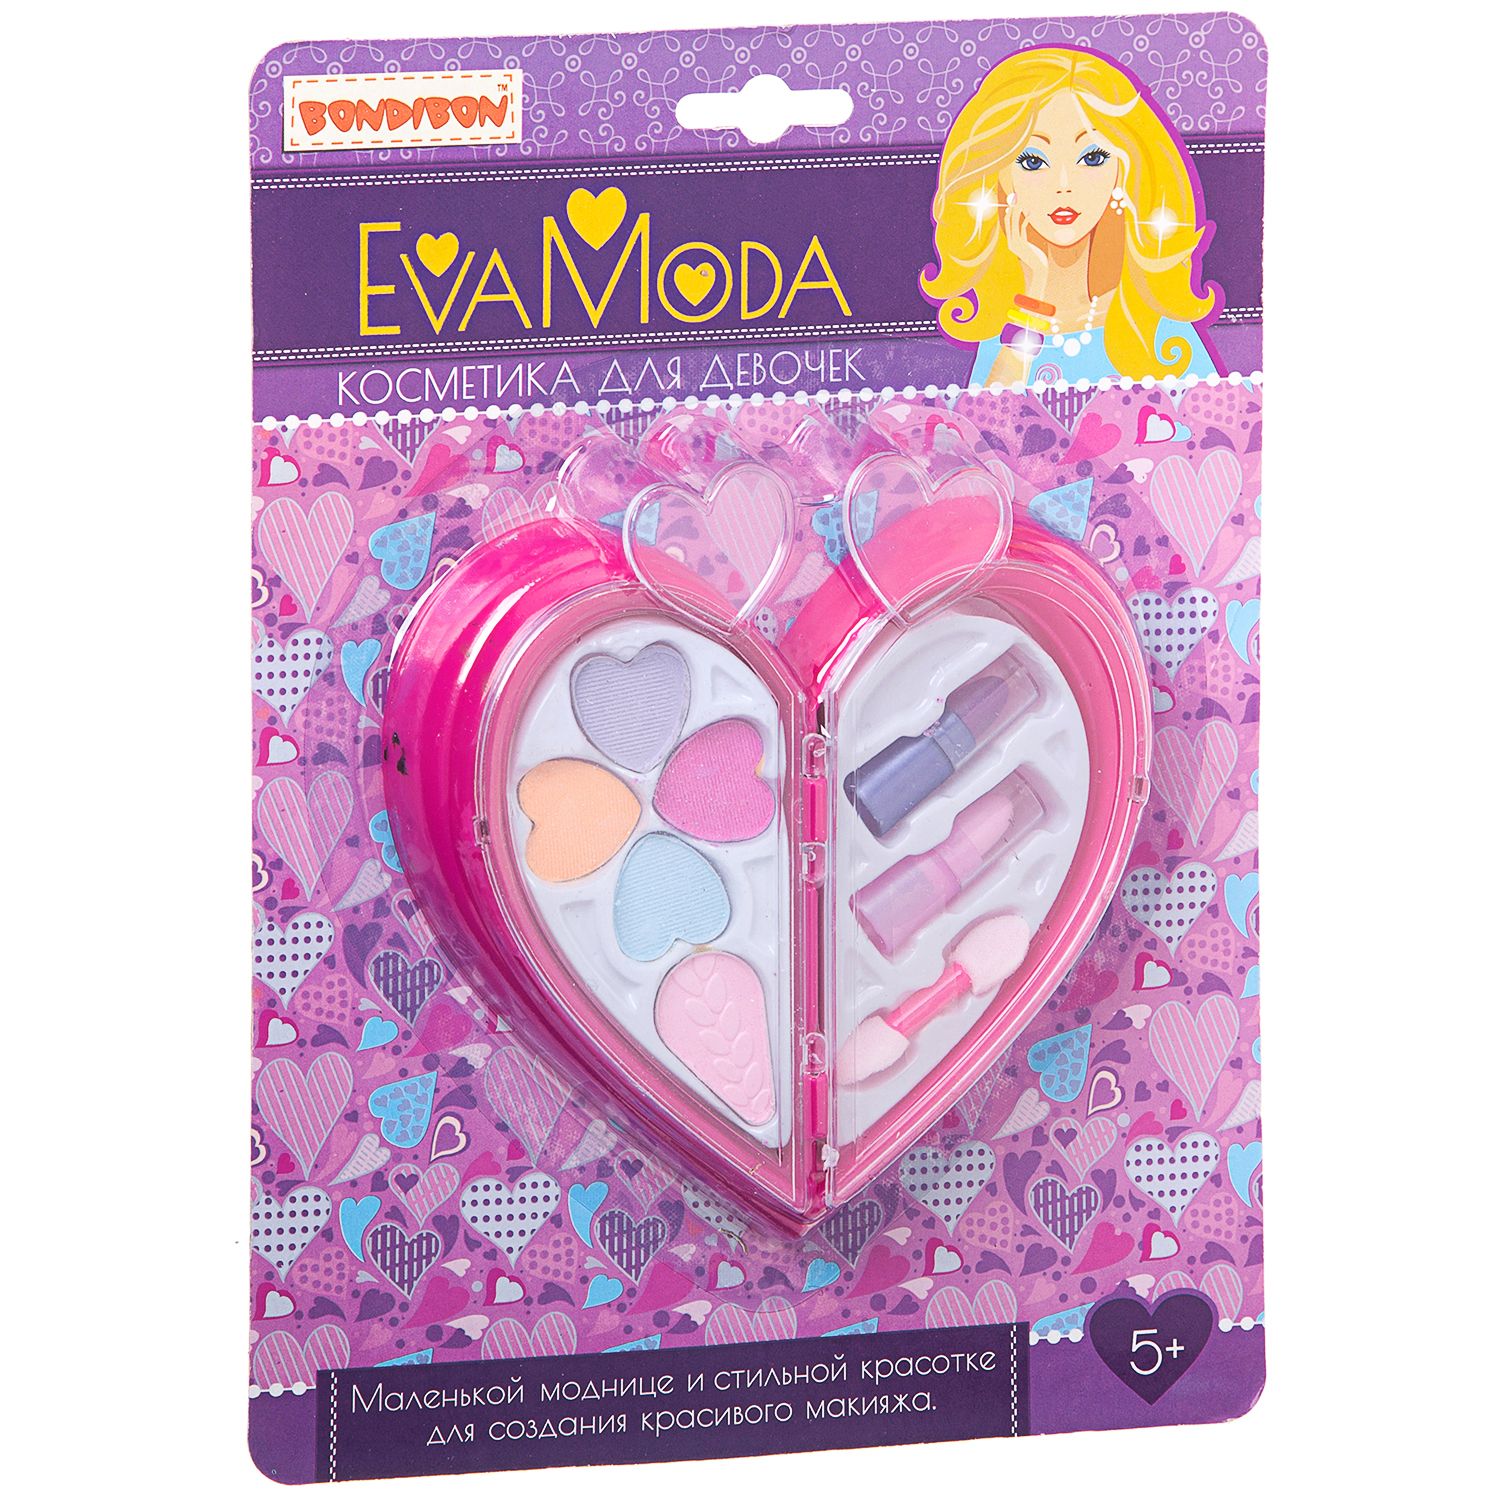 Набор детской декоративной косметики Eva Moda сердце, 2-а отделения с тенями, помадами, ВВ1761 Bondibon Бондибон